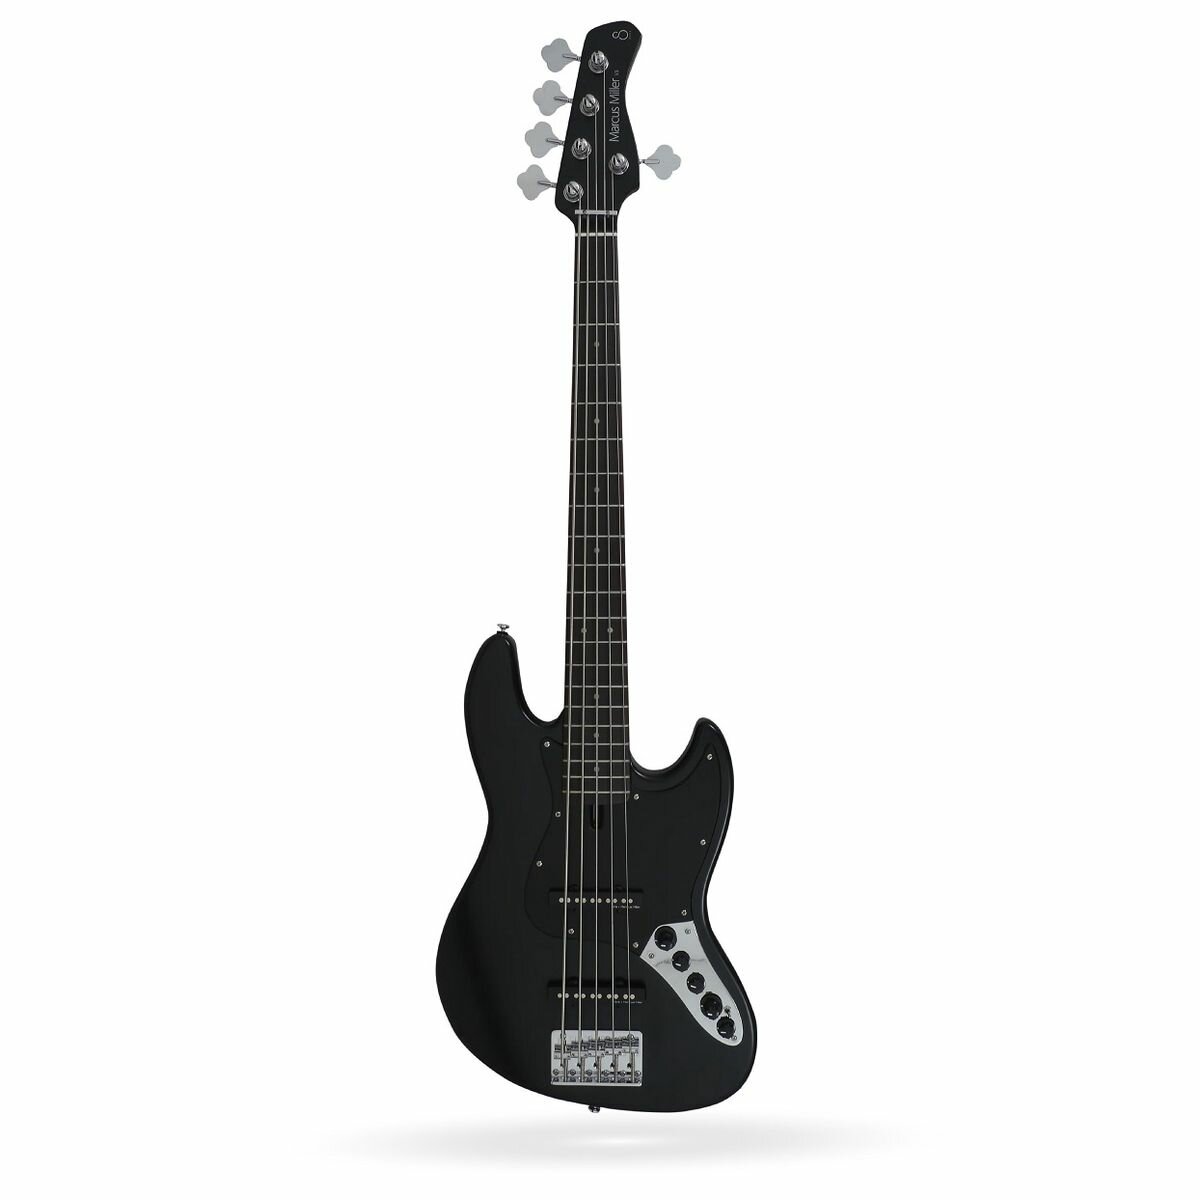 Sire V3-5 BKS 5-струнная бас-гитара, форма Jazz Bass, цвет черный матовый